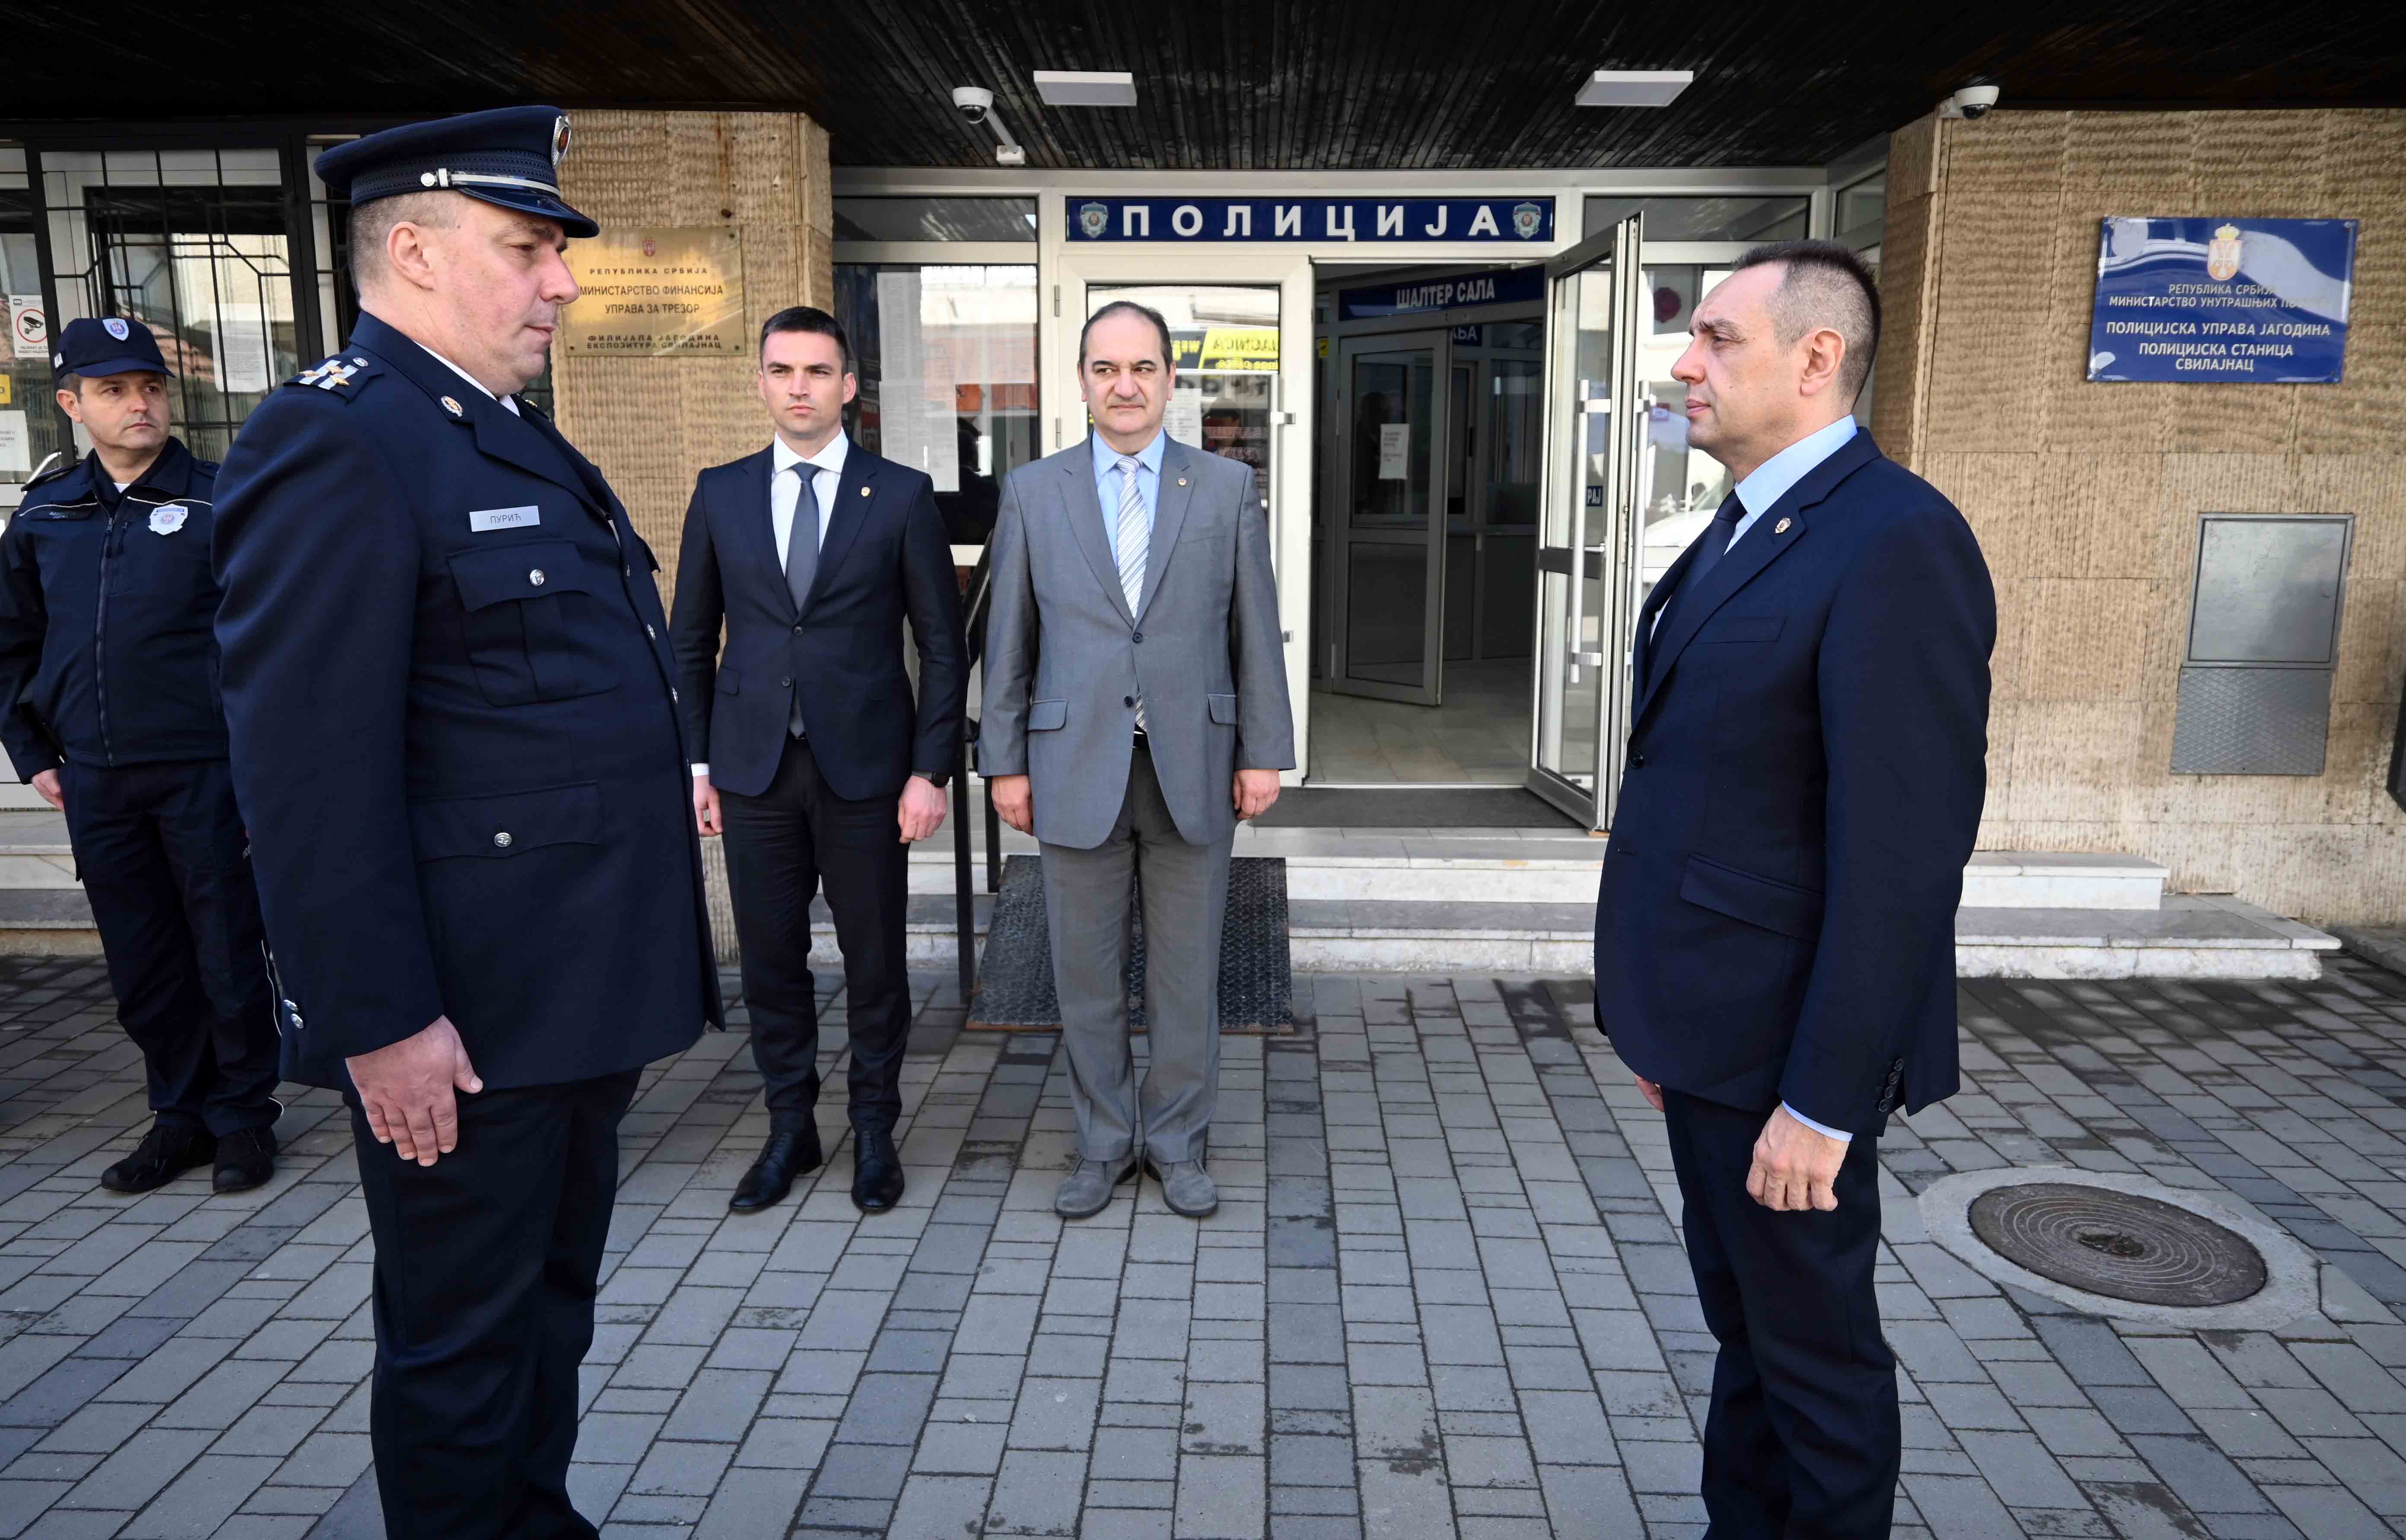 Министар Александар Вулин: Држава на челу са поново изабраним председником Вучићем наставиће да улаже у јачање и развој српске полиције